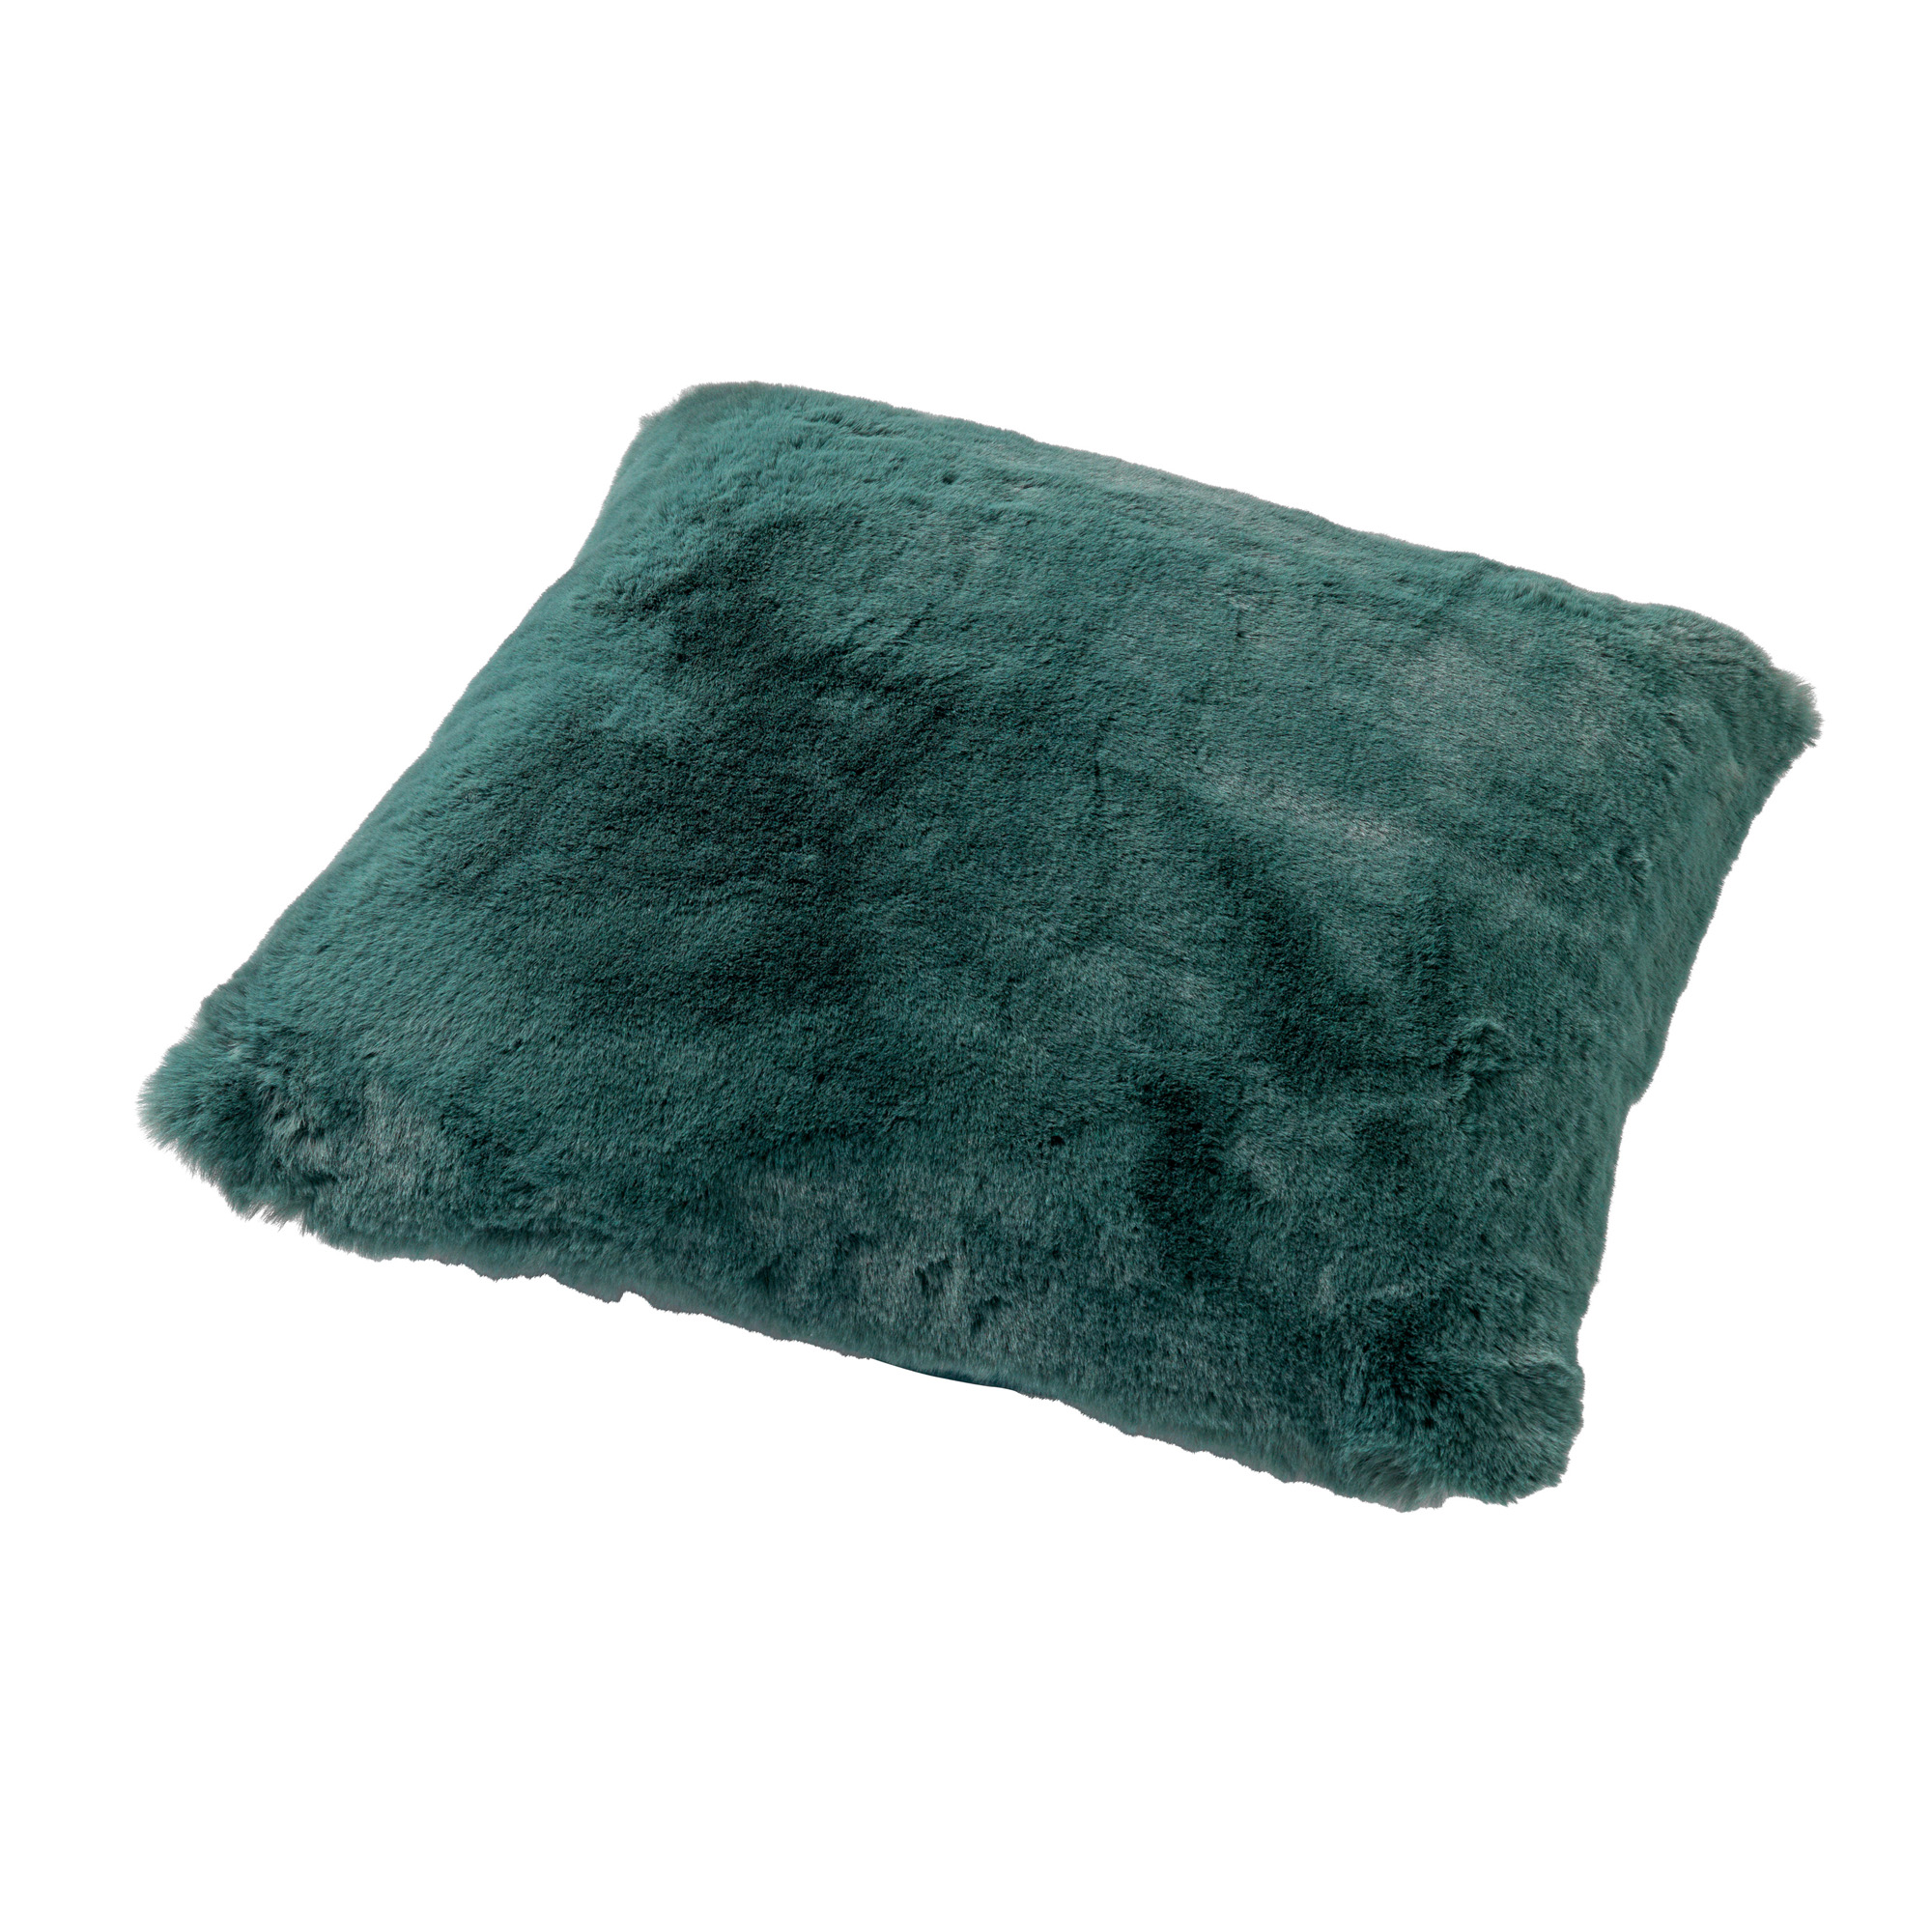 ZAYA - Sierkussen unikleur 45x45 cm - Sagebrush Green - groen - superzacht